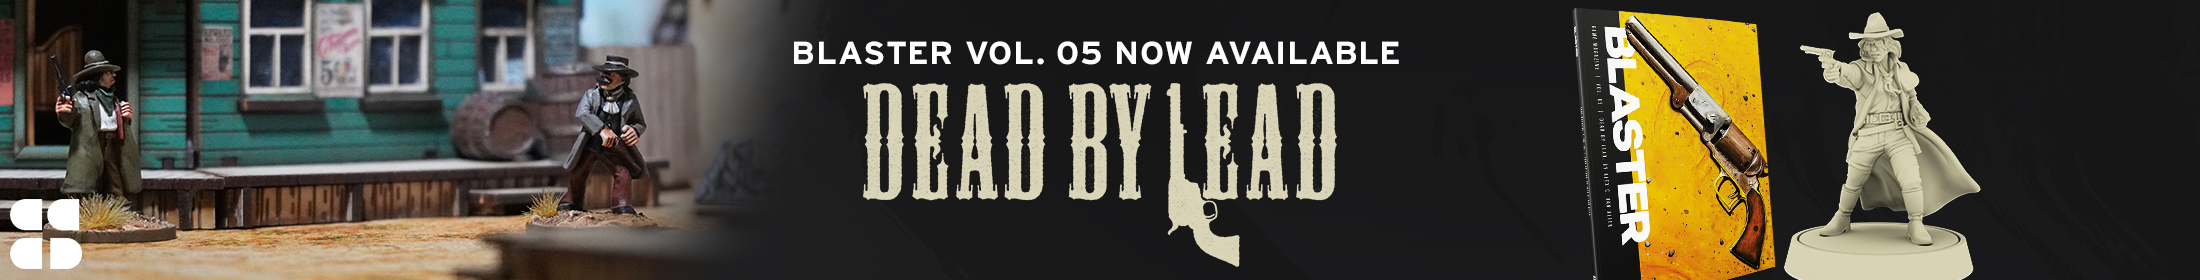 BLASTER Vol 05: Dead by Lead